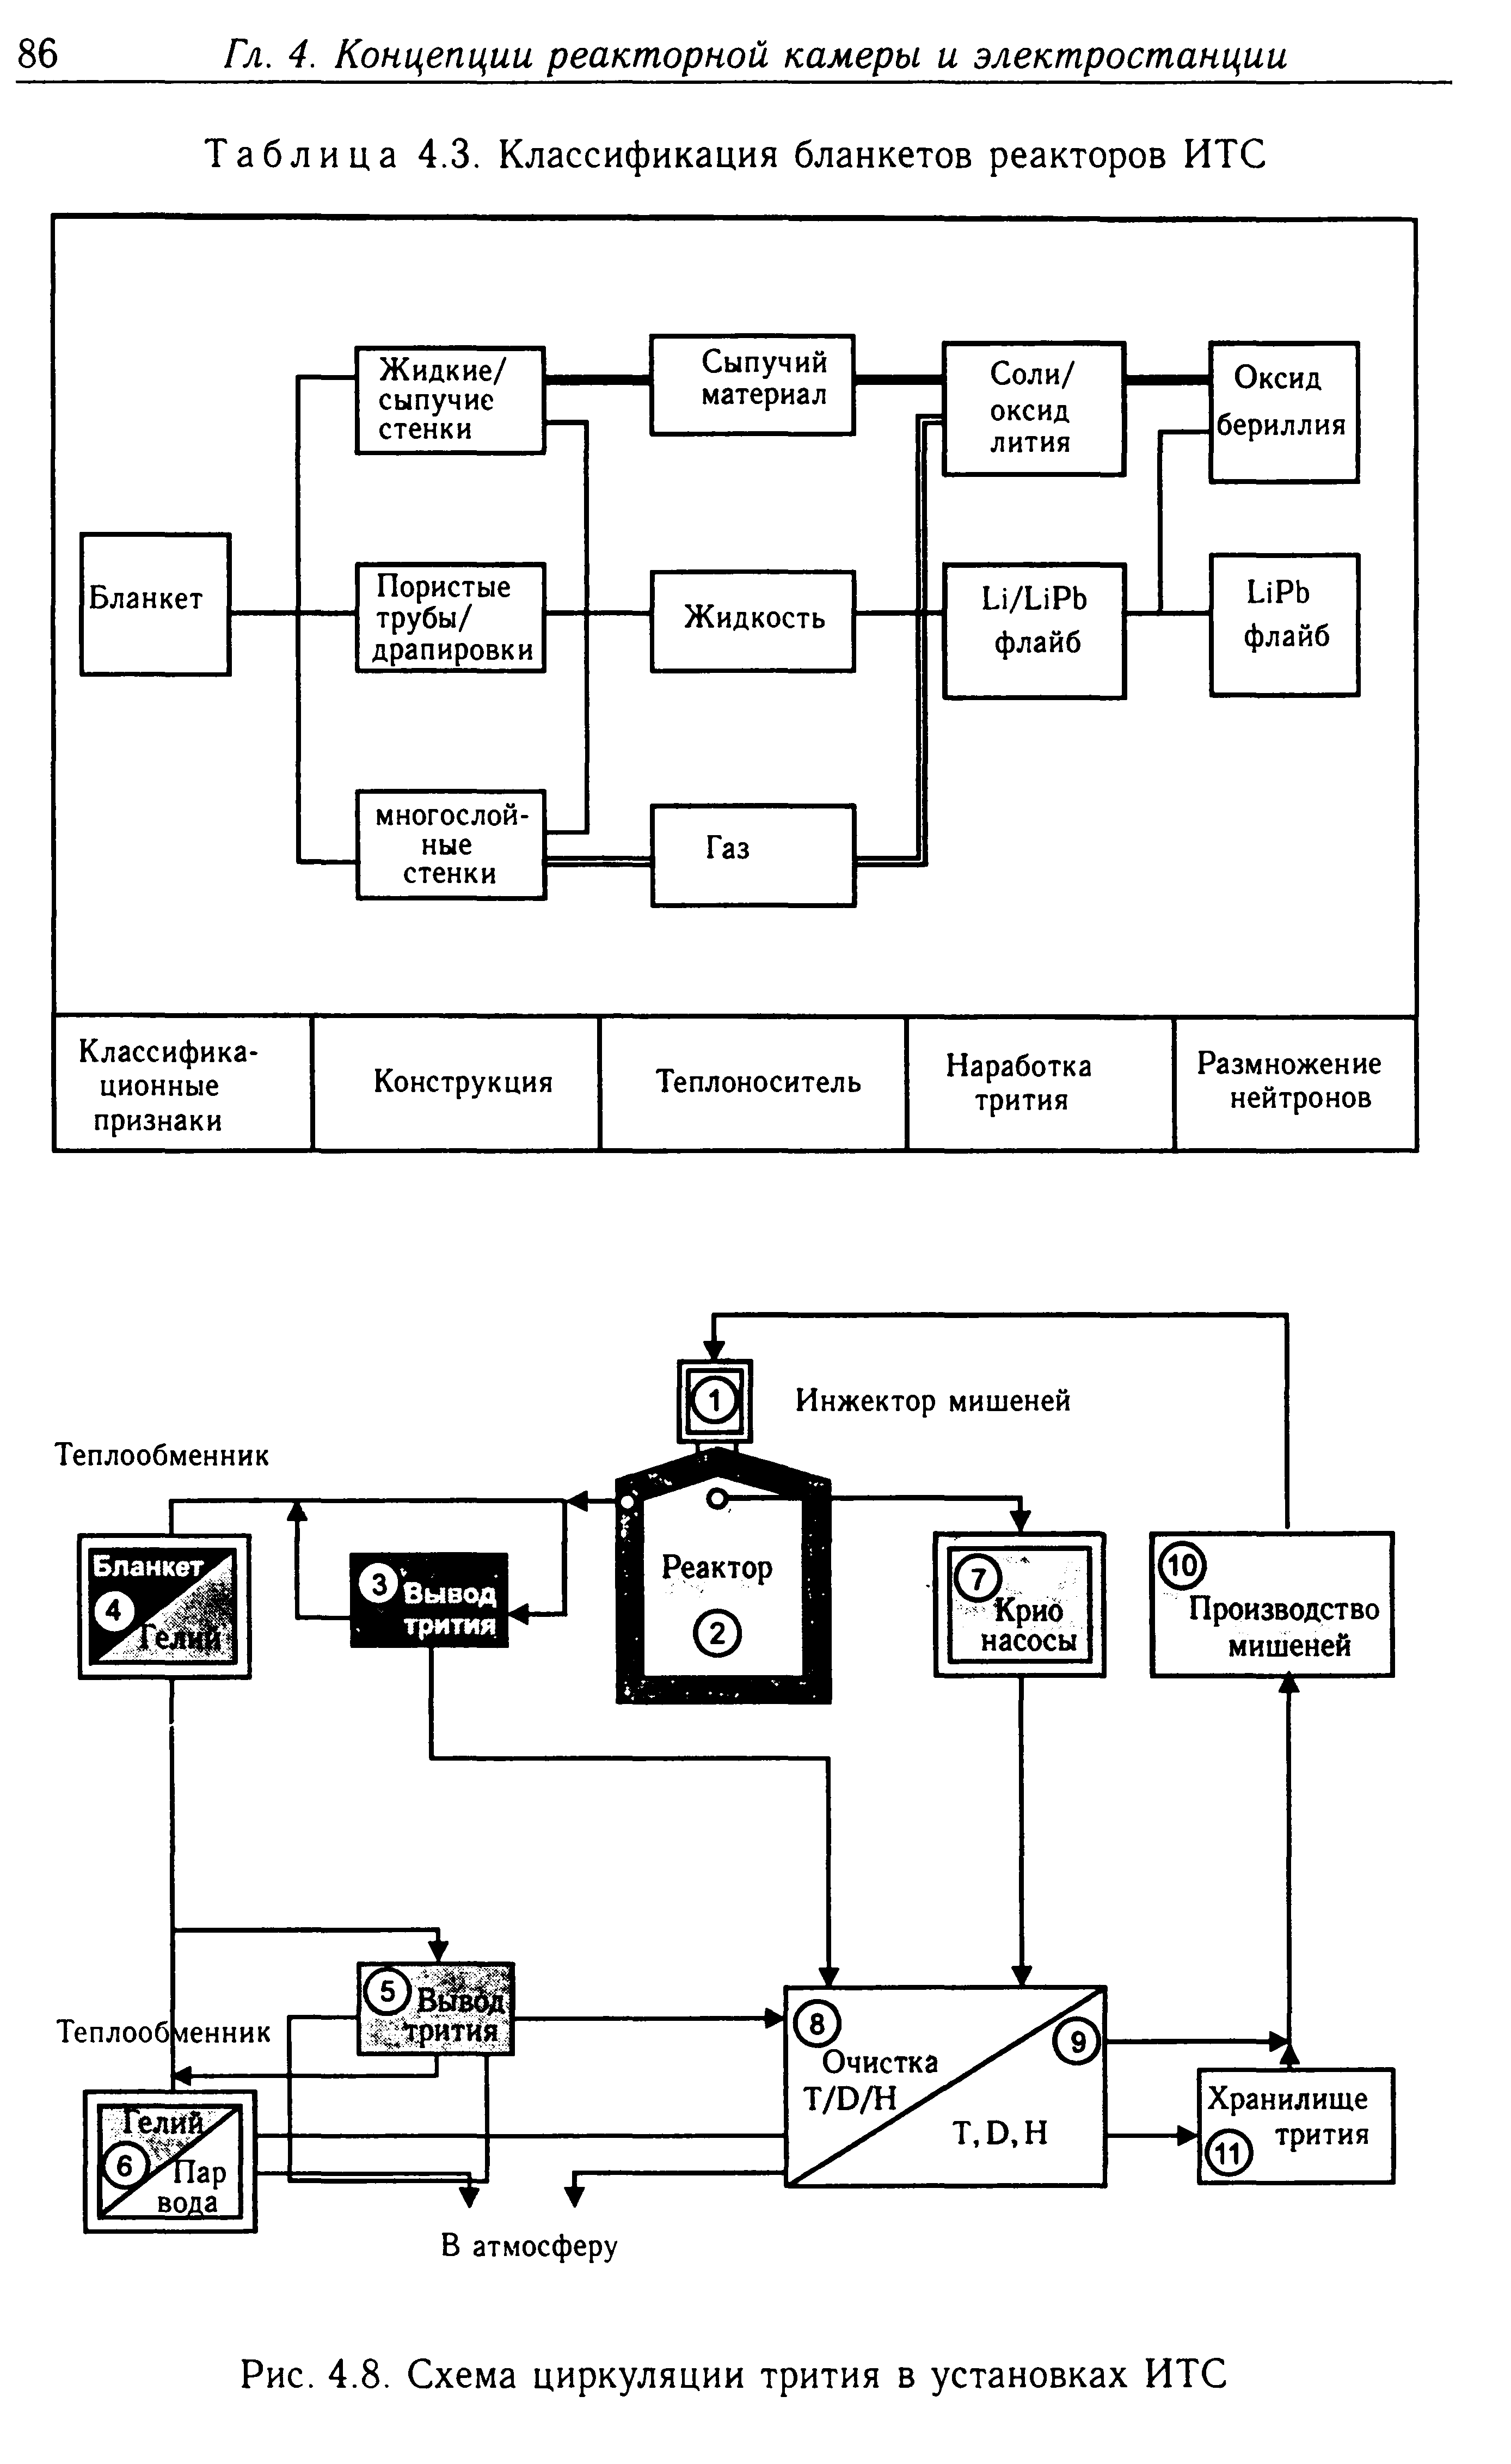 Таблица 4.3. Классификация бланкетов реакторов ИТС
